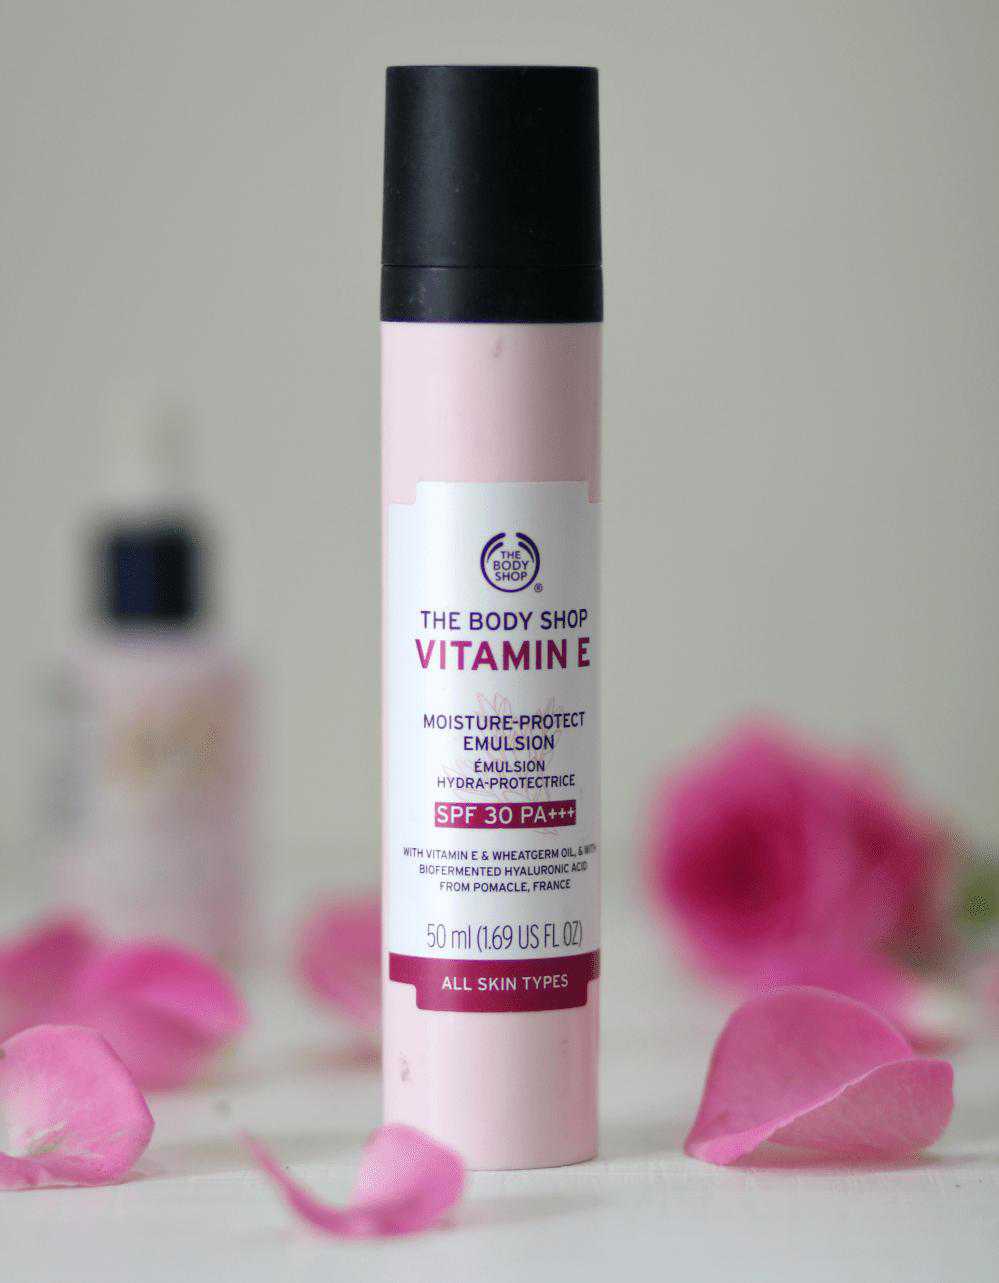 The Body Shop Vitamin E Moisture Protect Emulsion with SPF